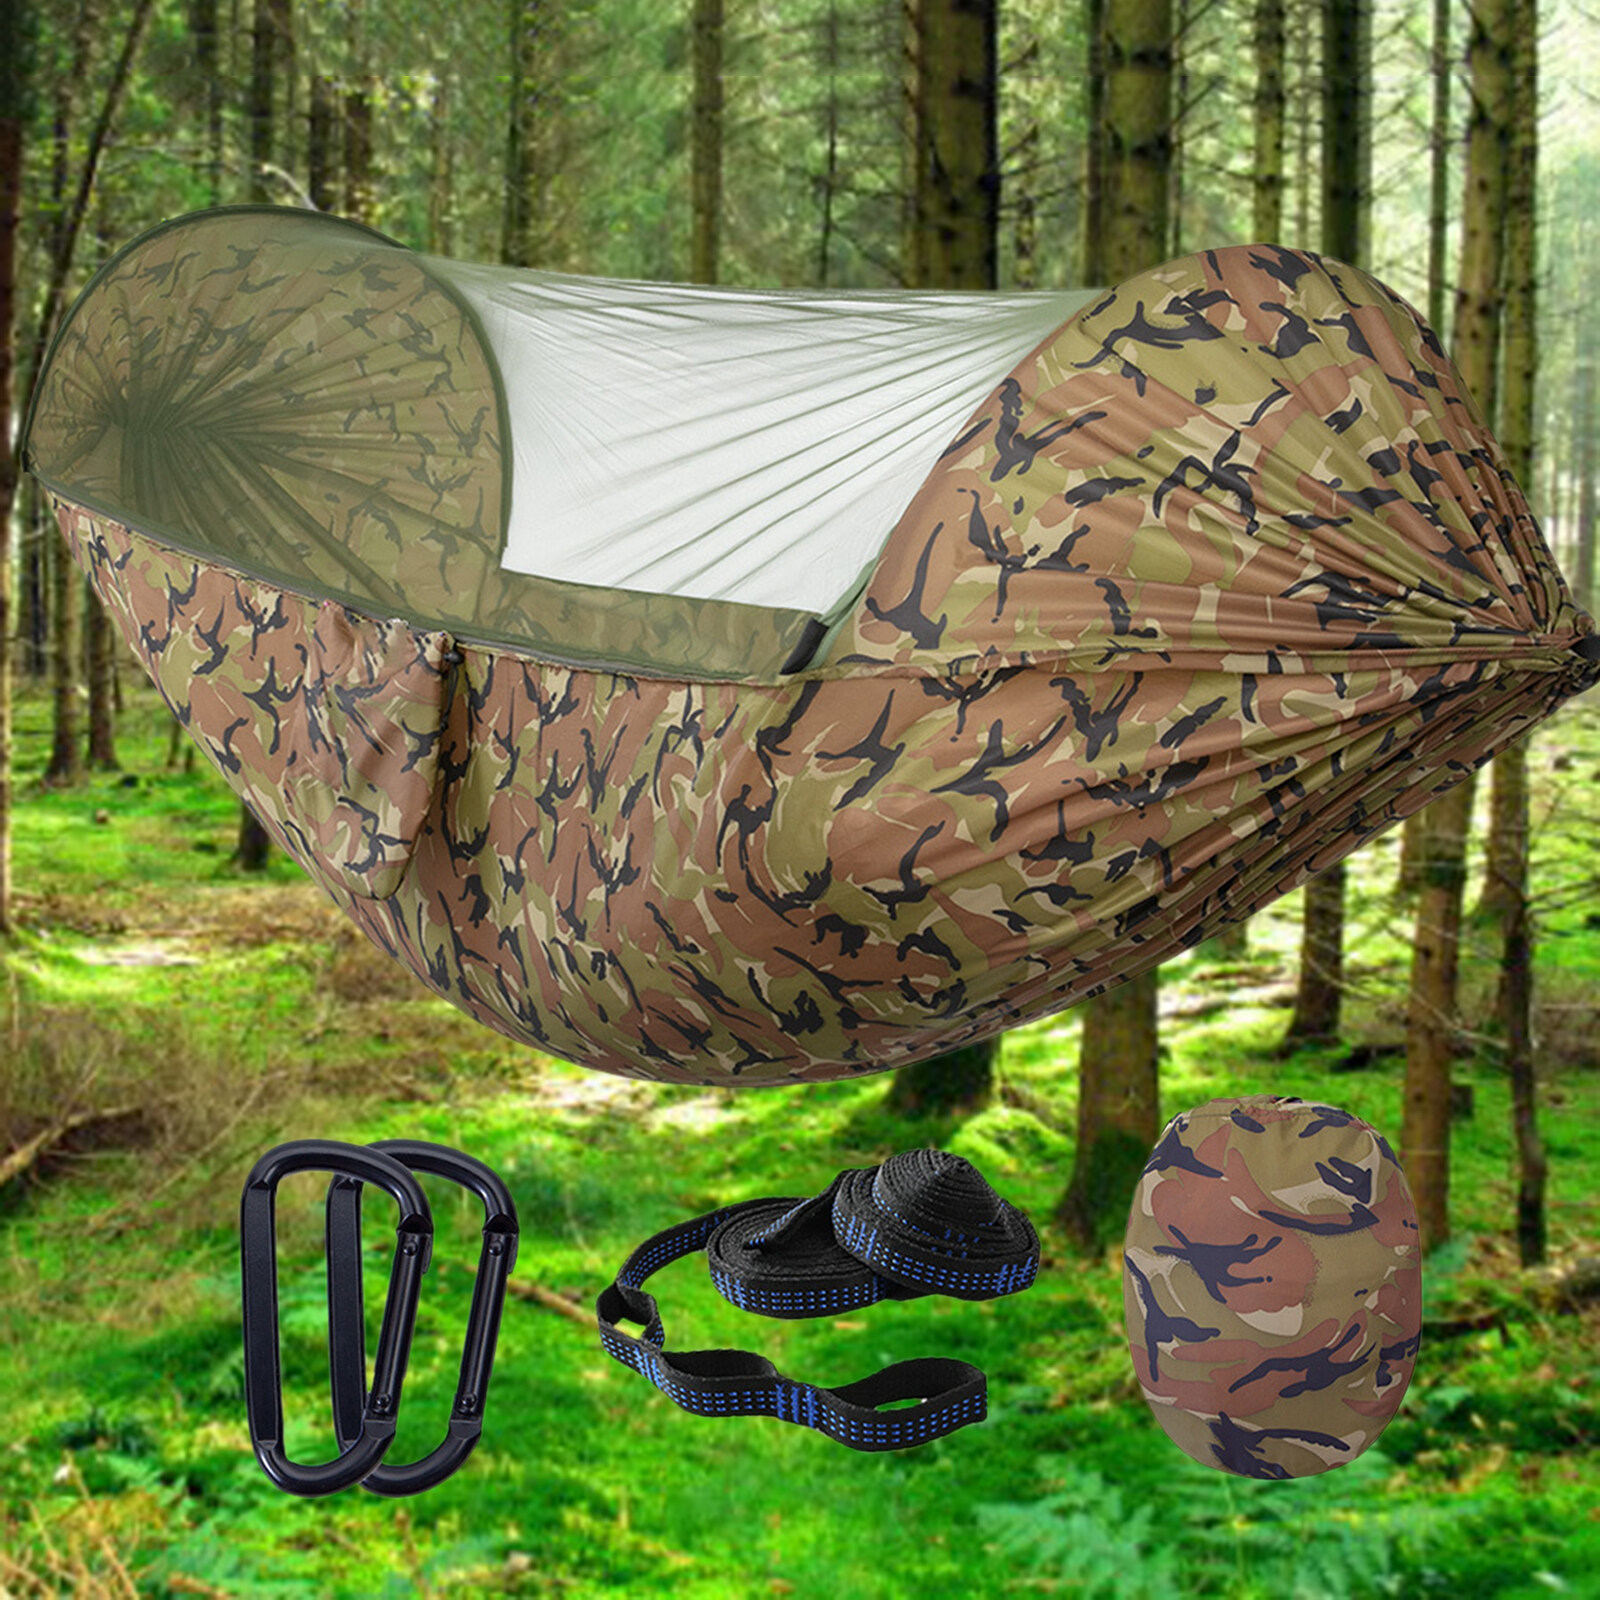 Võng cắm trại đơn và đôi có màn chống muỗi / côn trùng